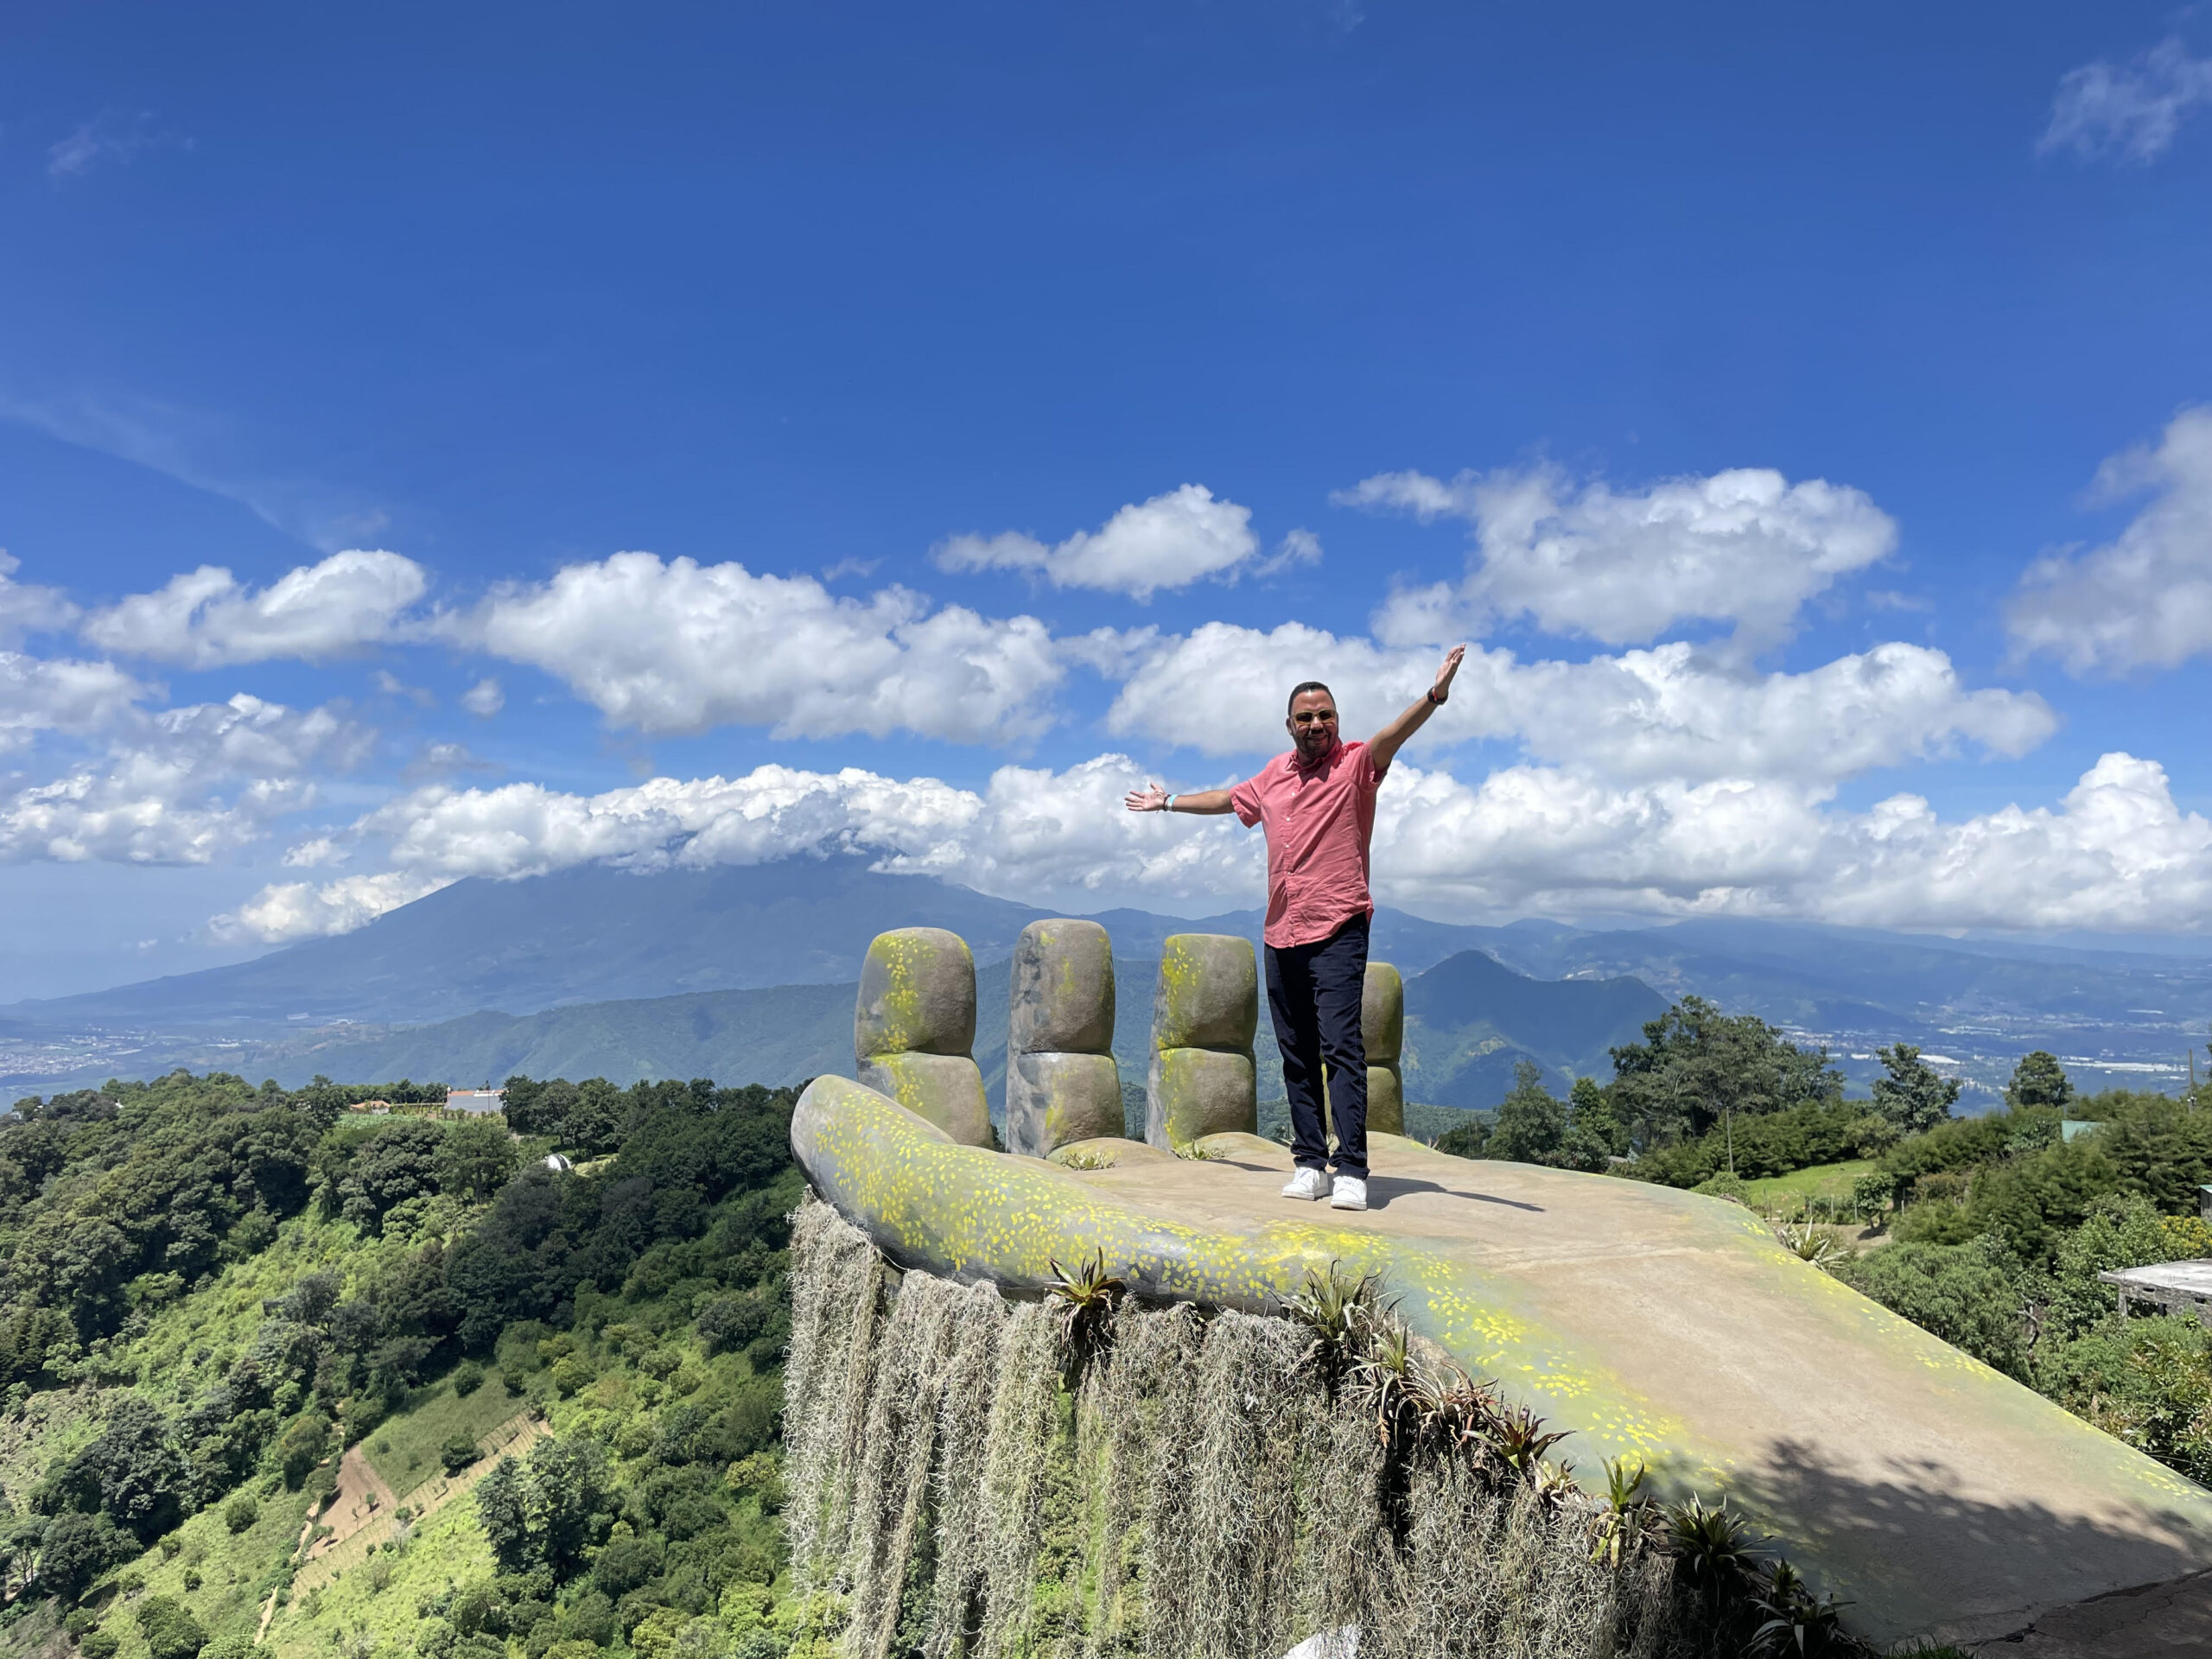 Tres destinos turísticos en Guatemala, que no te puedes perder